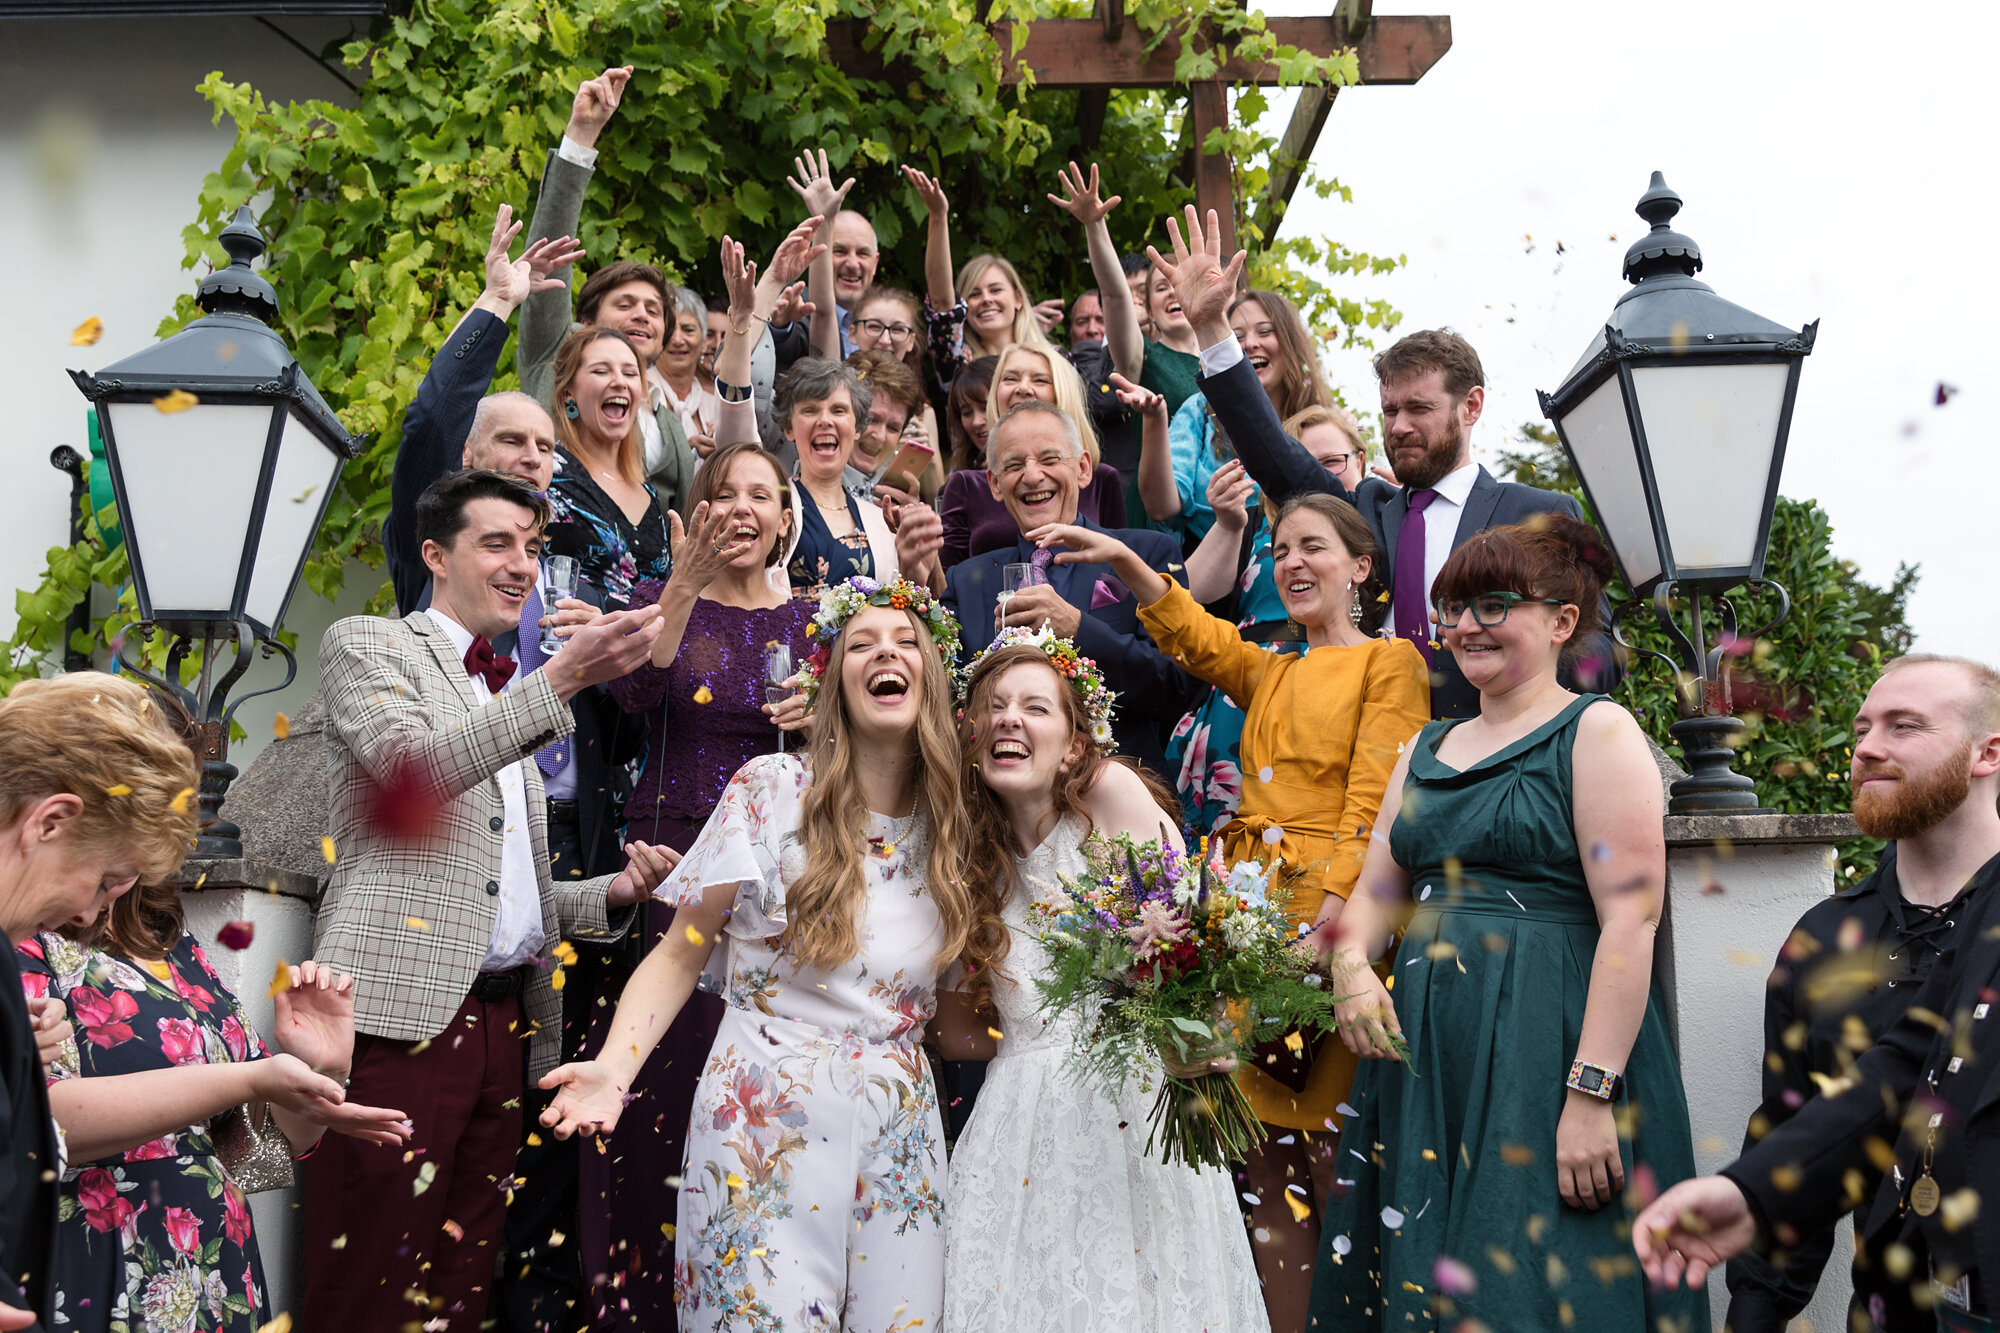 Same sex wedding at Ty Mawr Cardiff, 2 brides